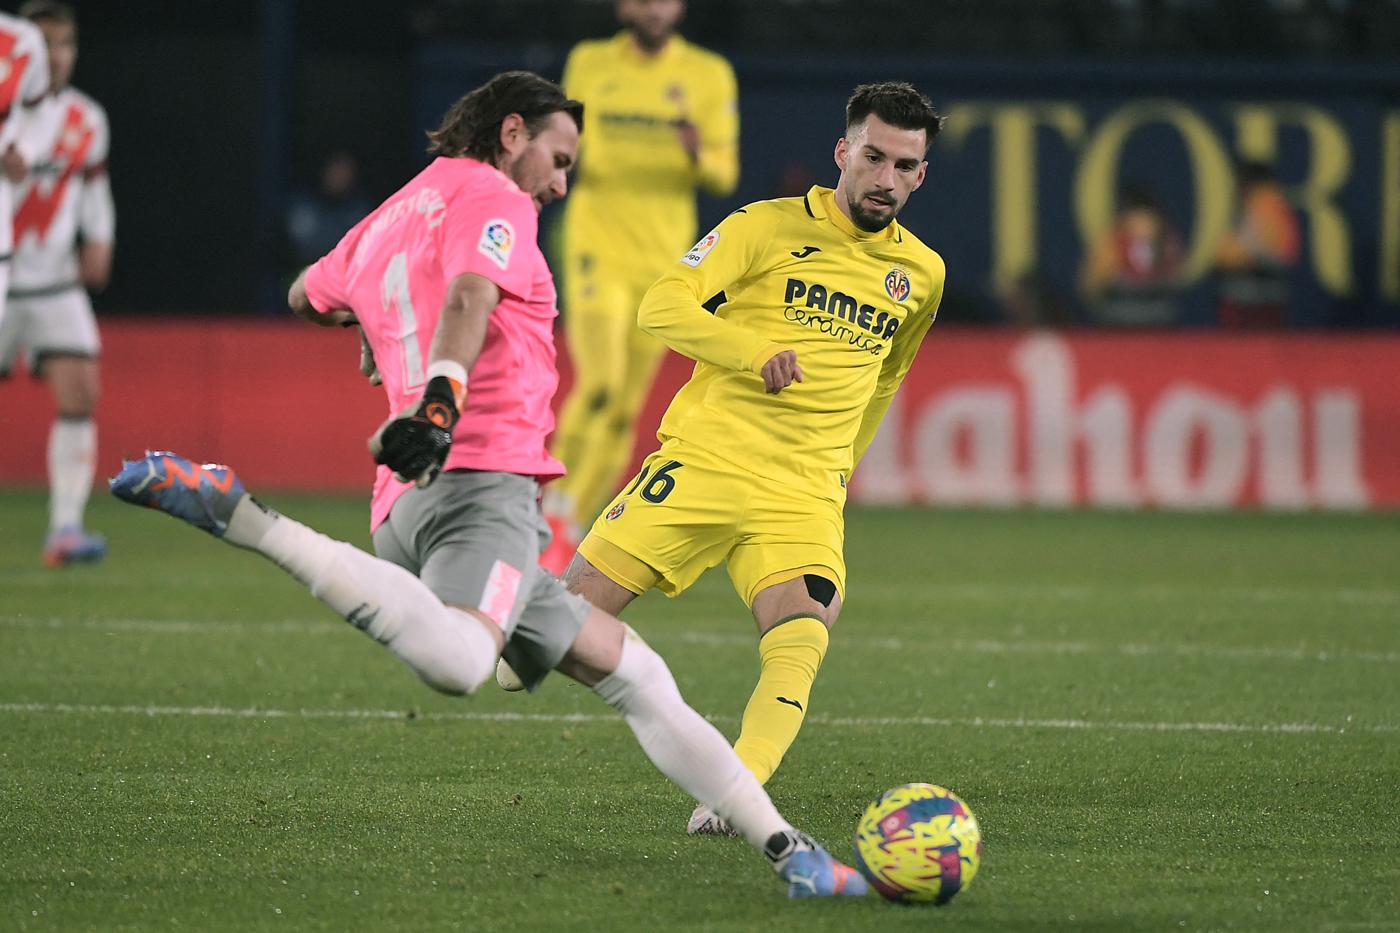 Real Madryt kontra Villarreal - 2-3. Liga hiszpańska, runda 28. Przegląd meczu, statystyki.